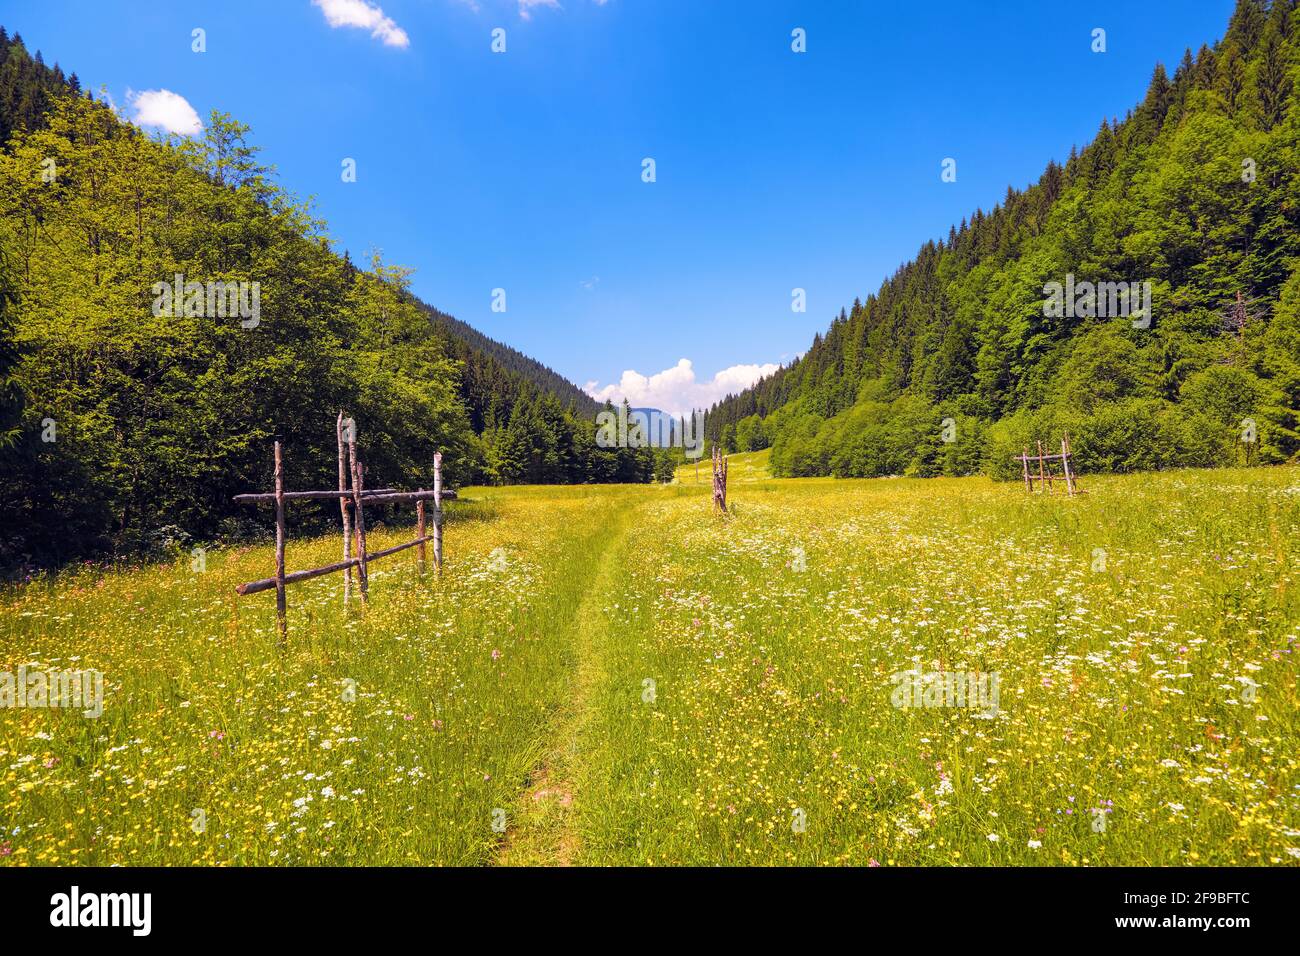 Straße mit einem Holzzaun in einem Feld mit gelben Blumen. Der schöne Blick auf die Berglandschaft ist am sonnigen Tag vom grünen Tal aus geöffnet Stockfoto